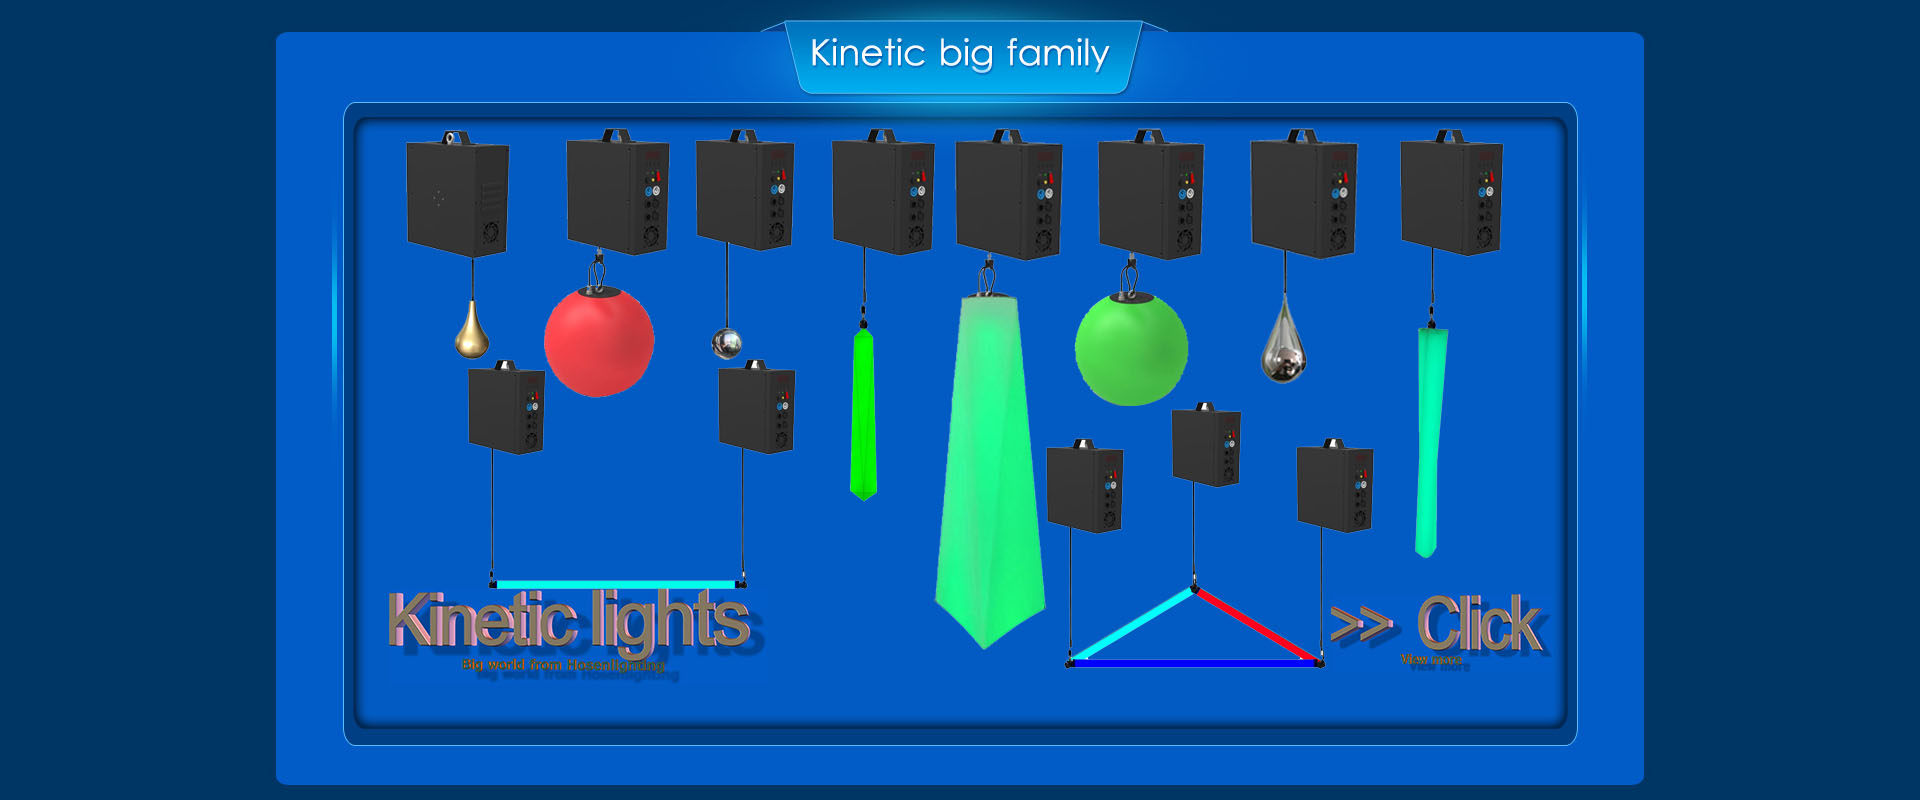 Infinity Rotation Led dancing DMX RGB kinetic LED light pixel tube light HS-LMB60IR - Kinetic light - 2